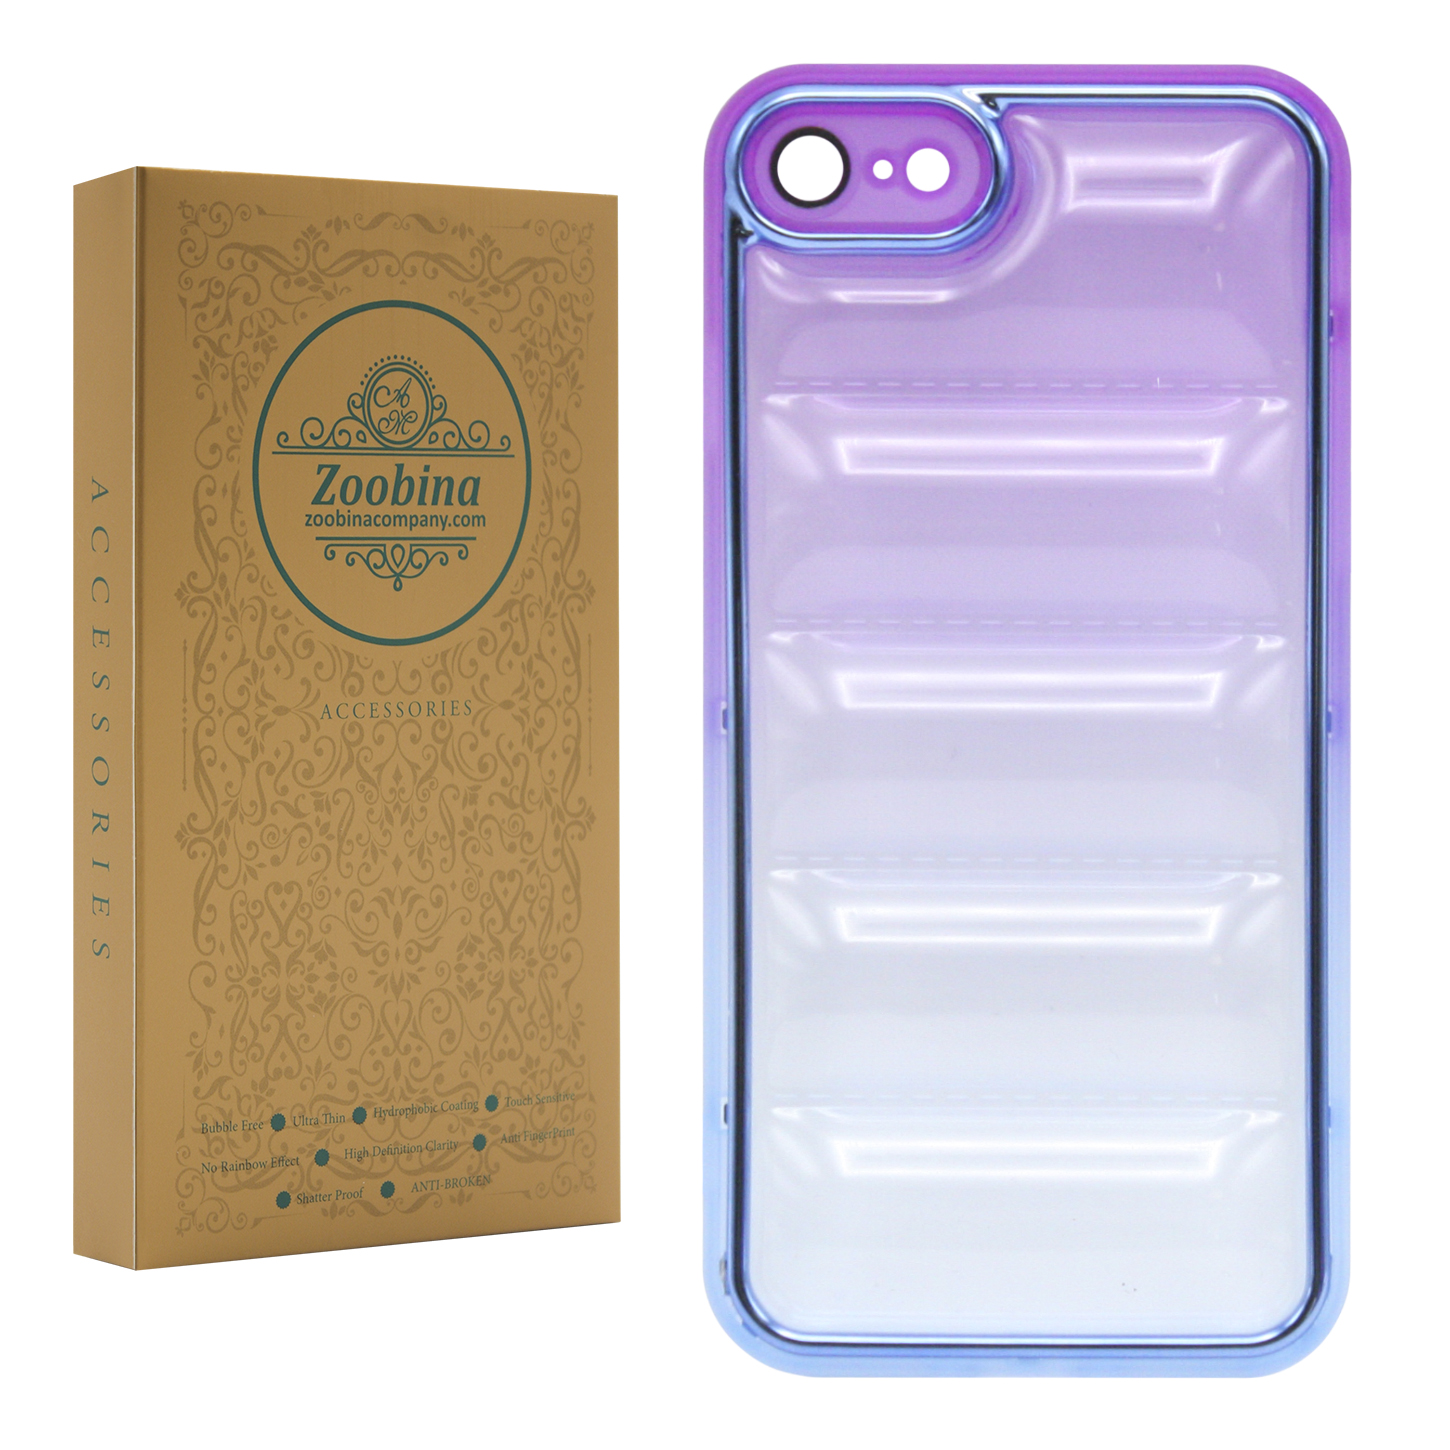 کاور زوبینا مدل Pummy مناسب برای گوشی موبایل اپل iPhone 7 / 8 / SE 2020 / SE 2022